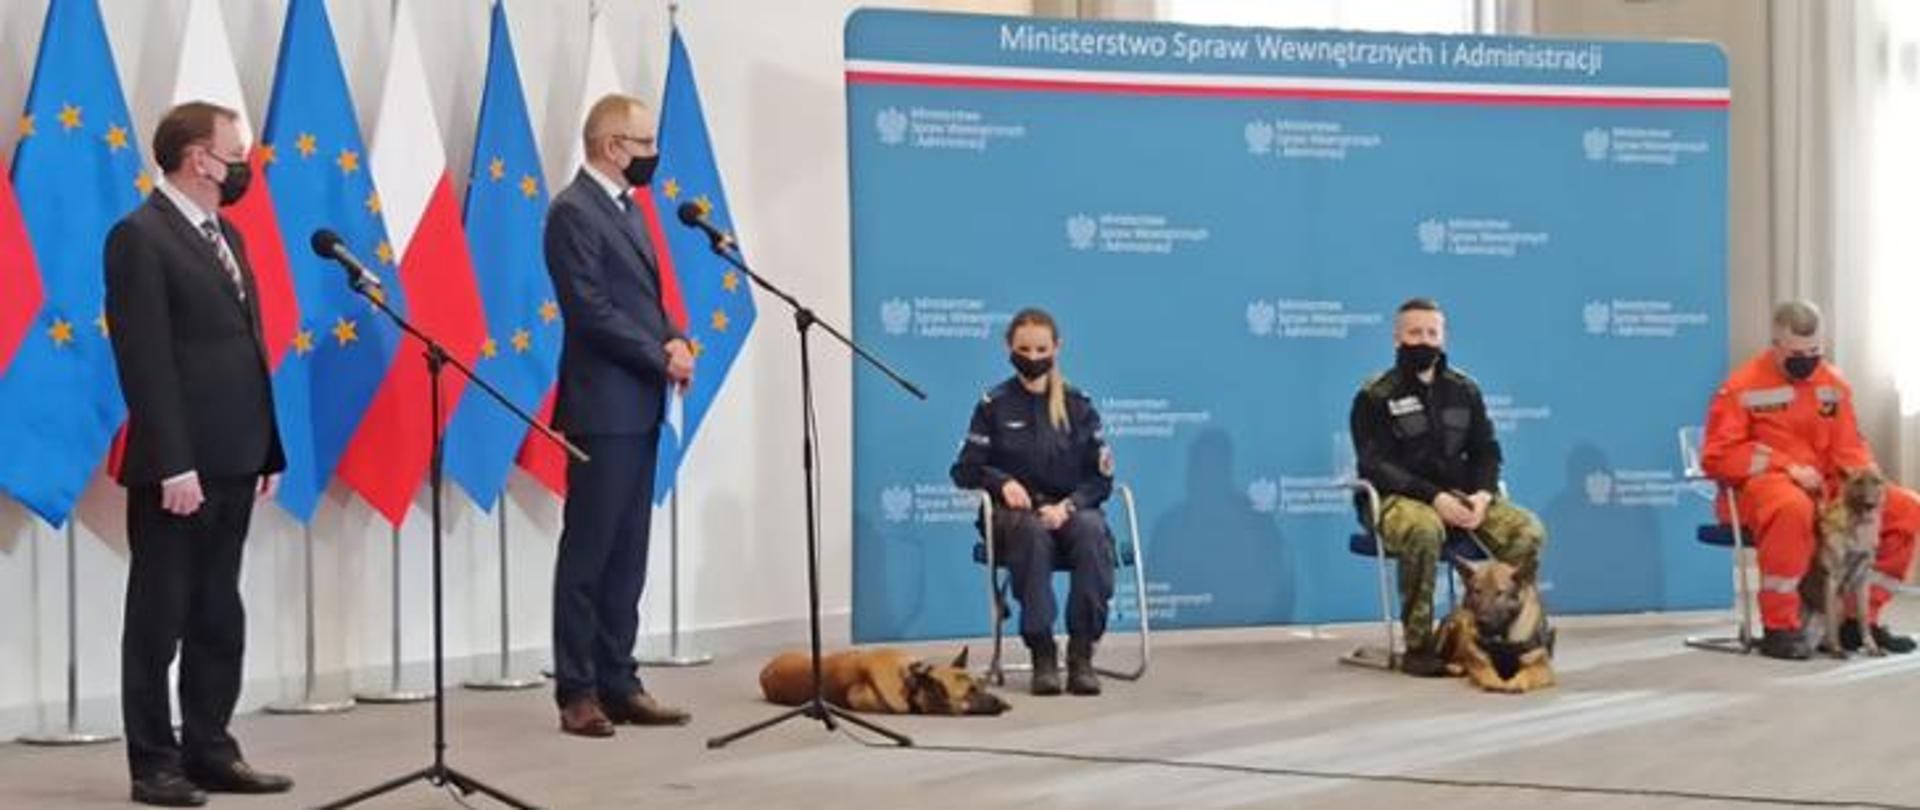 Konferencja przedstawicieli rządu w sprawie opieki nad zwierzętami. Dwóch mężczyzn stoi przy mikrofonach odpowiadając na pytania dziennikarzy po prawej stronie przedstawiciele służb na krzesłach (kobieta i dwóch mężczyzna) przy nich znajdują się psy szkolone do pomocy w tle flagi. 